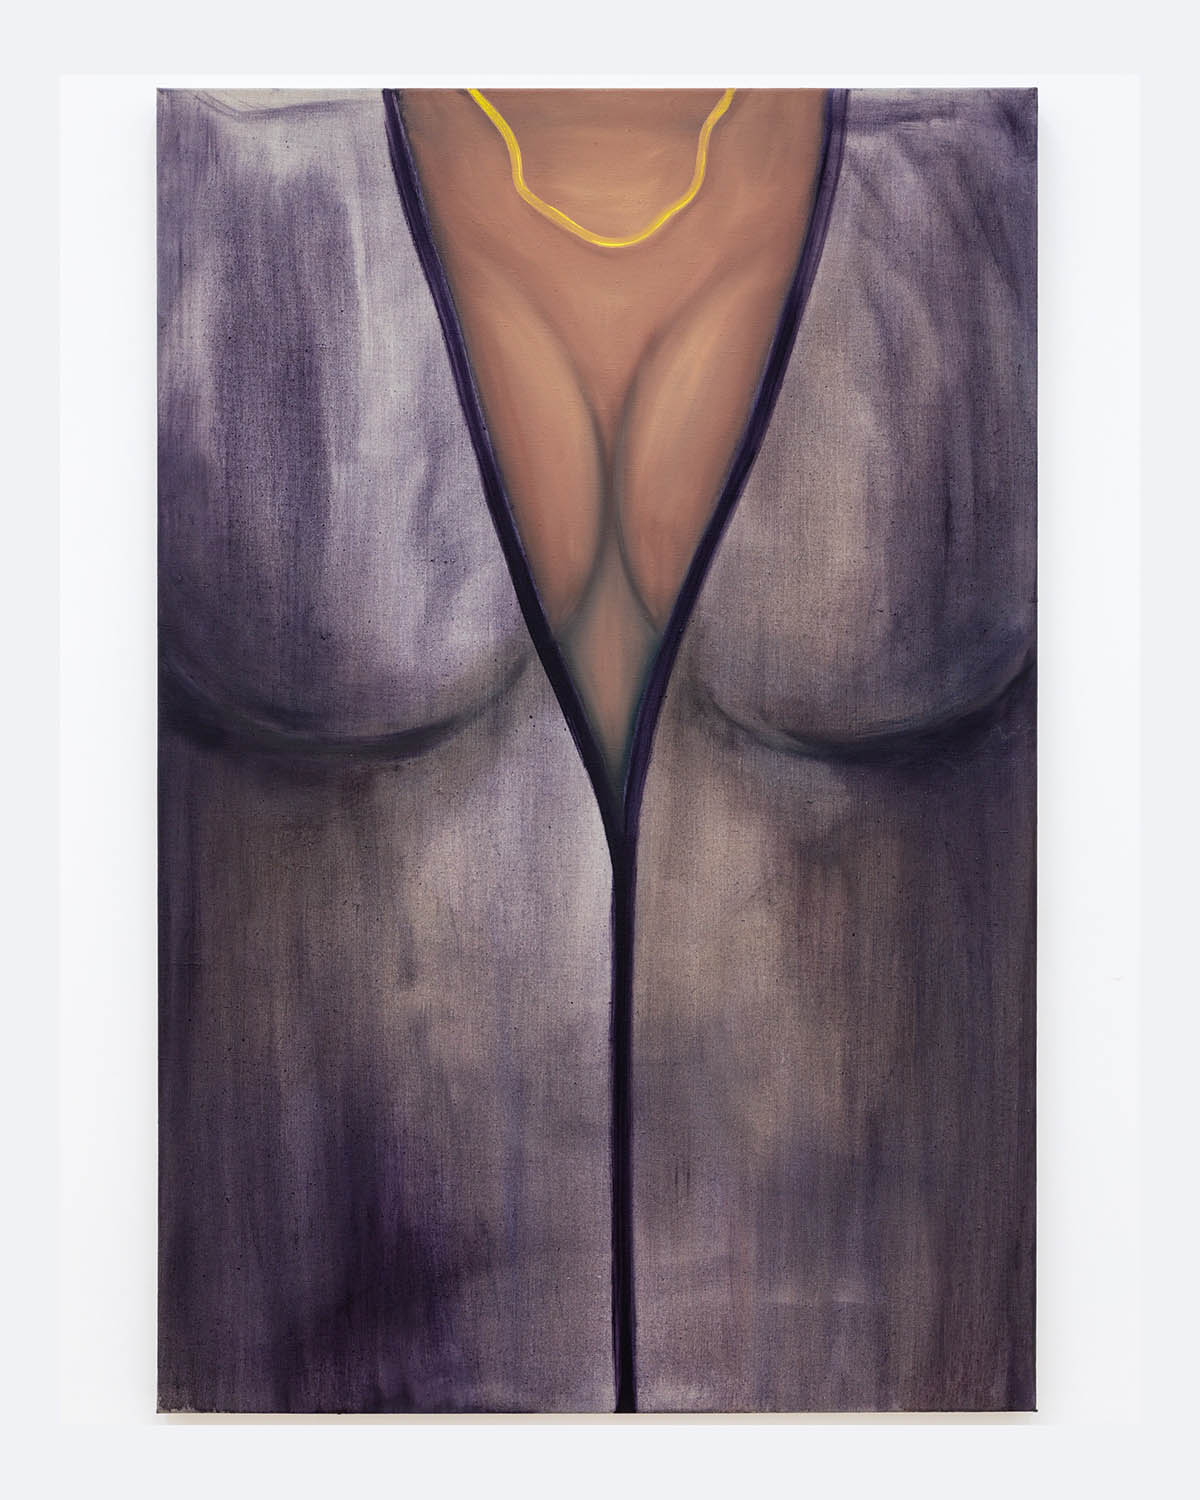 Kyveli Zoi, woman, 2022, oil on linen, 120x80x3,5 cm | Courtesy the artist and Acappella. Photo: Danilo Donzelli